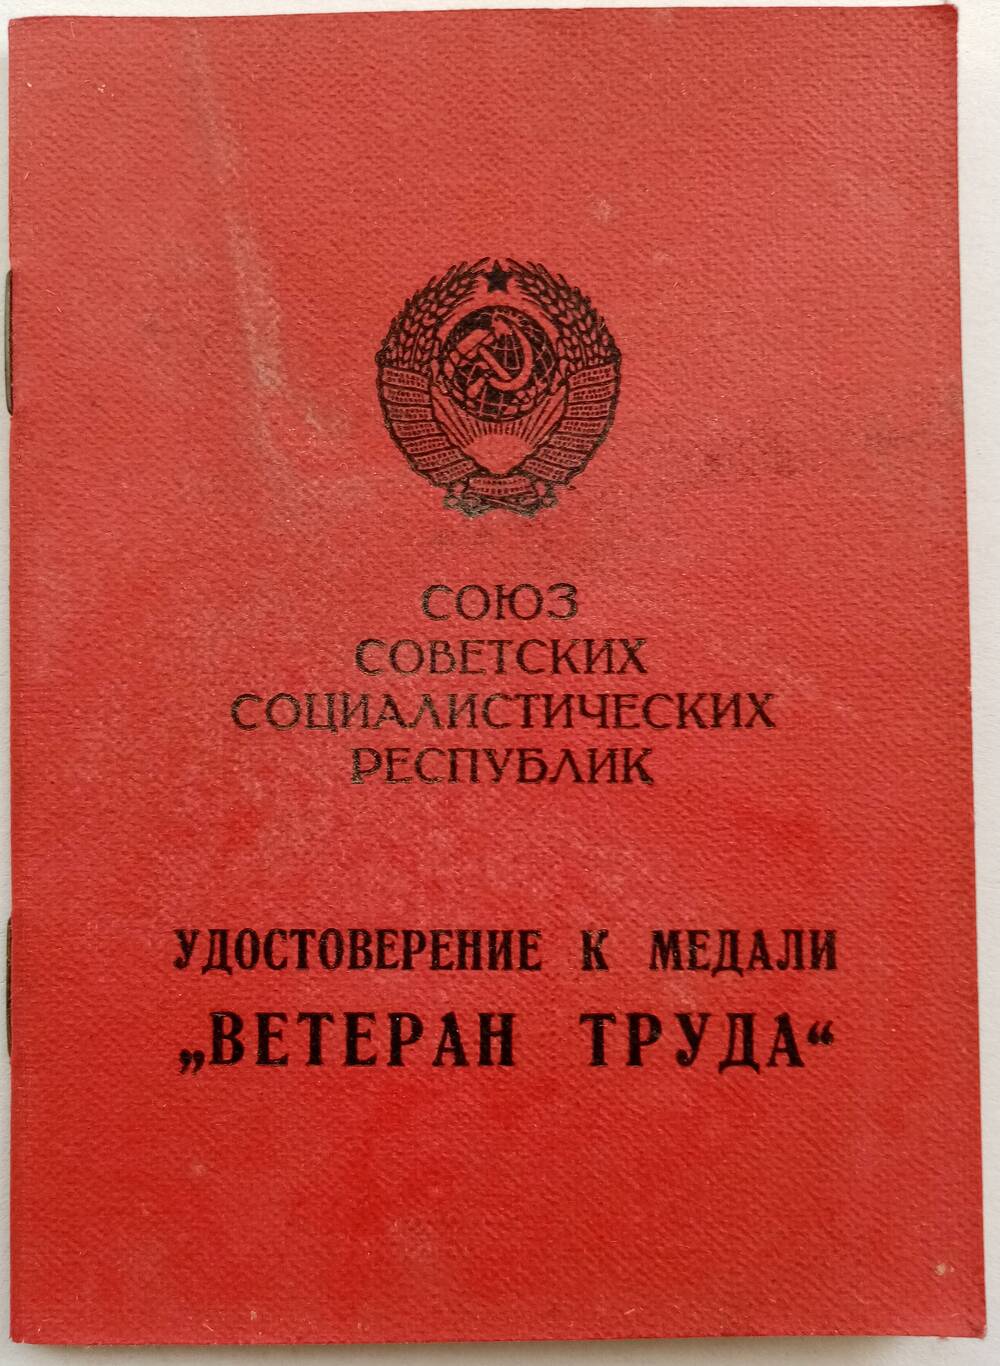 Удостоверение Слободенюк (Лузгановой) Софьи Михайловны о награждении ее медалью Ветеран труда от 04 февраля 1986 года.